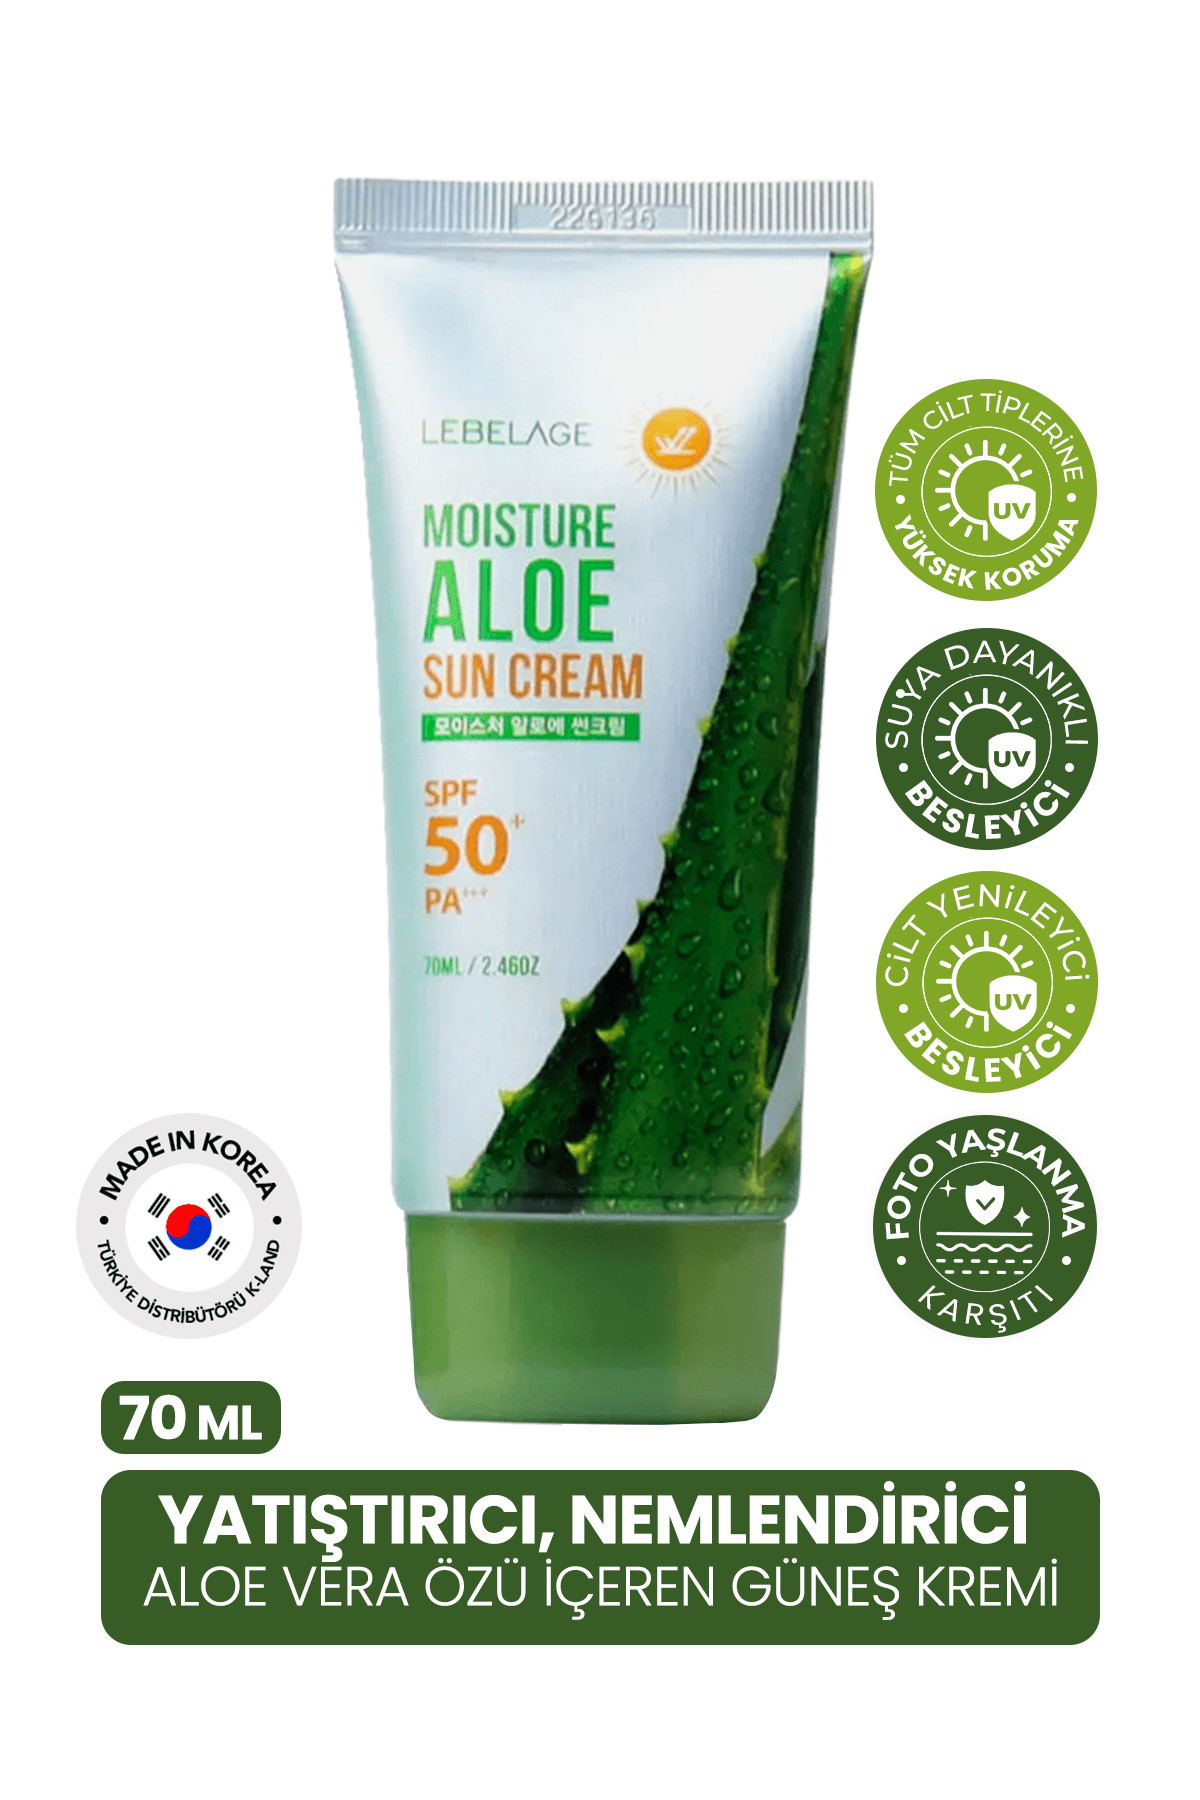 Yatıştırıcı, Nemlendirici Aloe Vera Spf 50 + Pa +++ Güneş Kremi Moisture Aloe Sun Cream